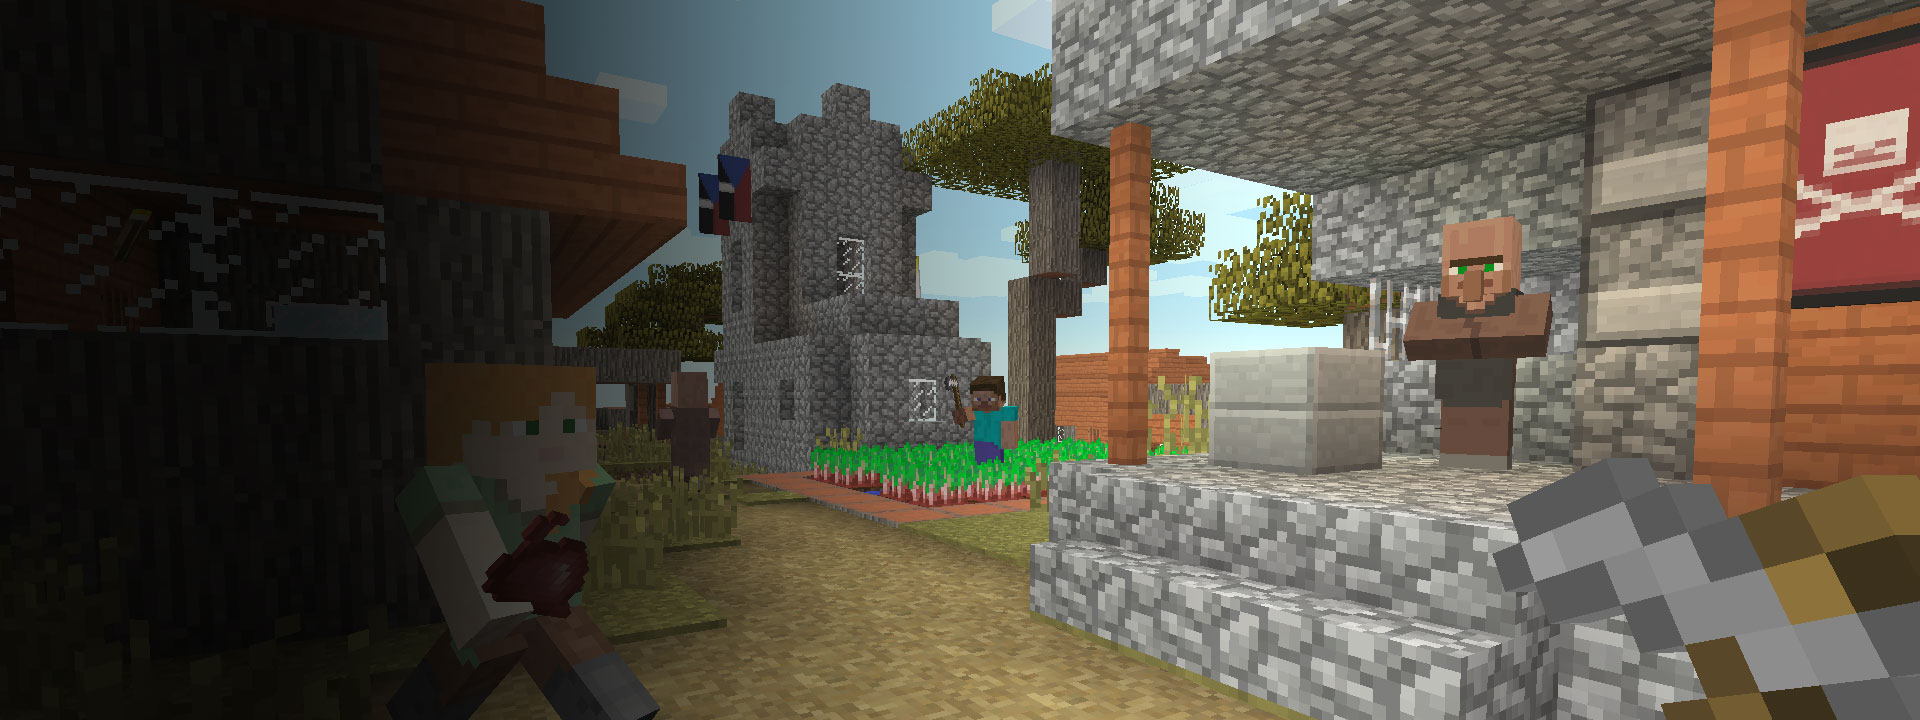 Πολλά σπίτια και χαρακτήρες του Minecraft περπατούν μπροστά τους.